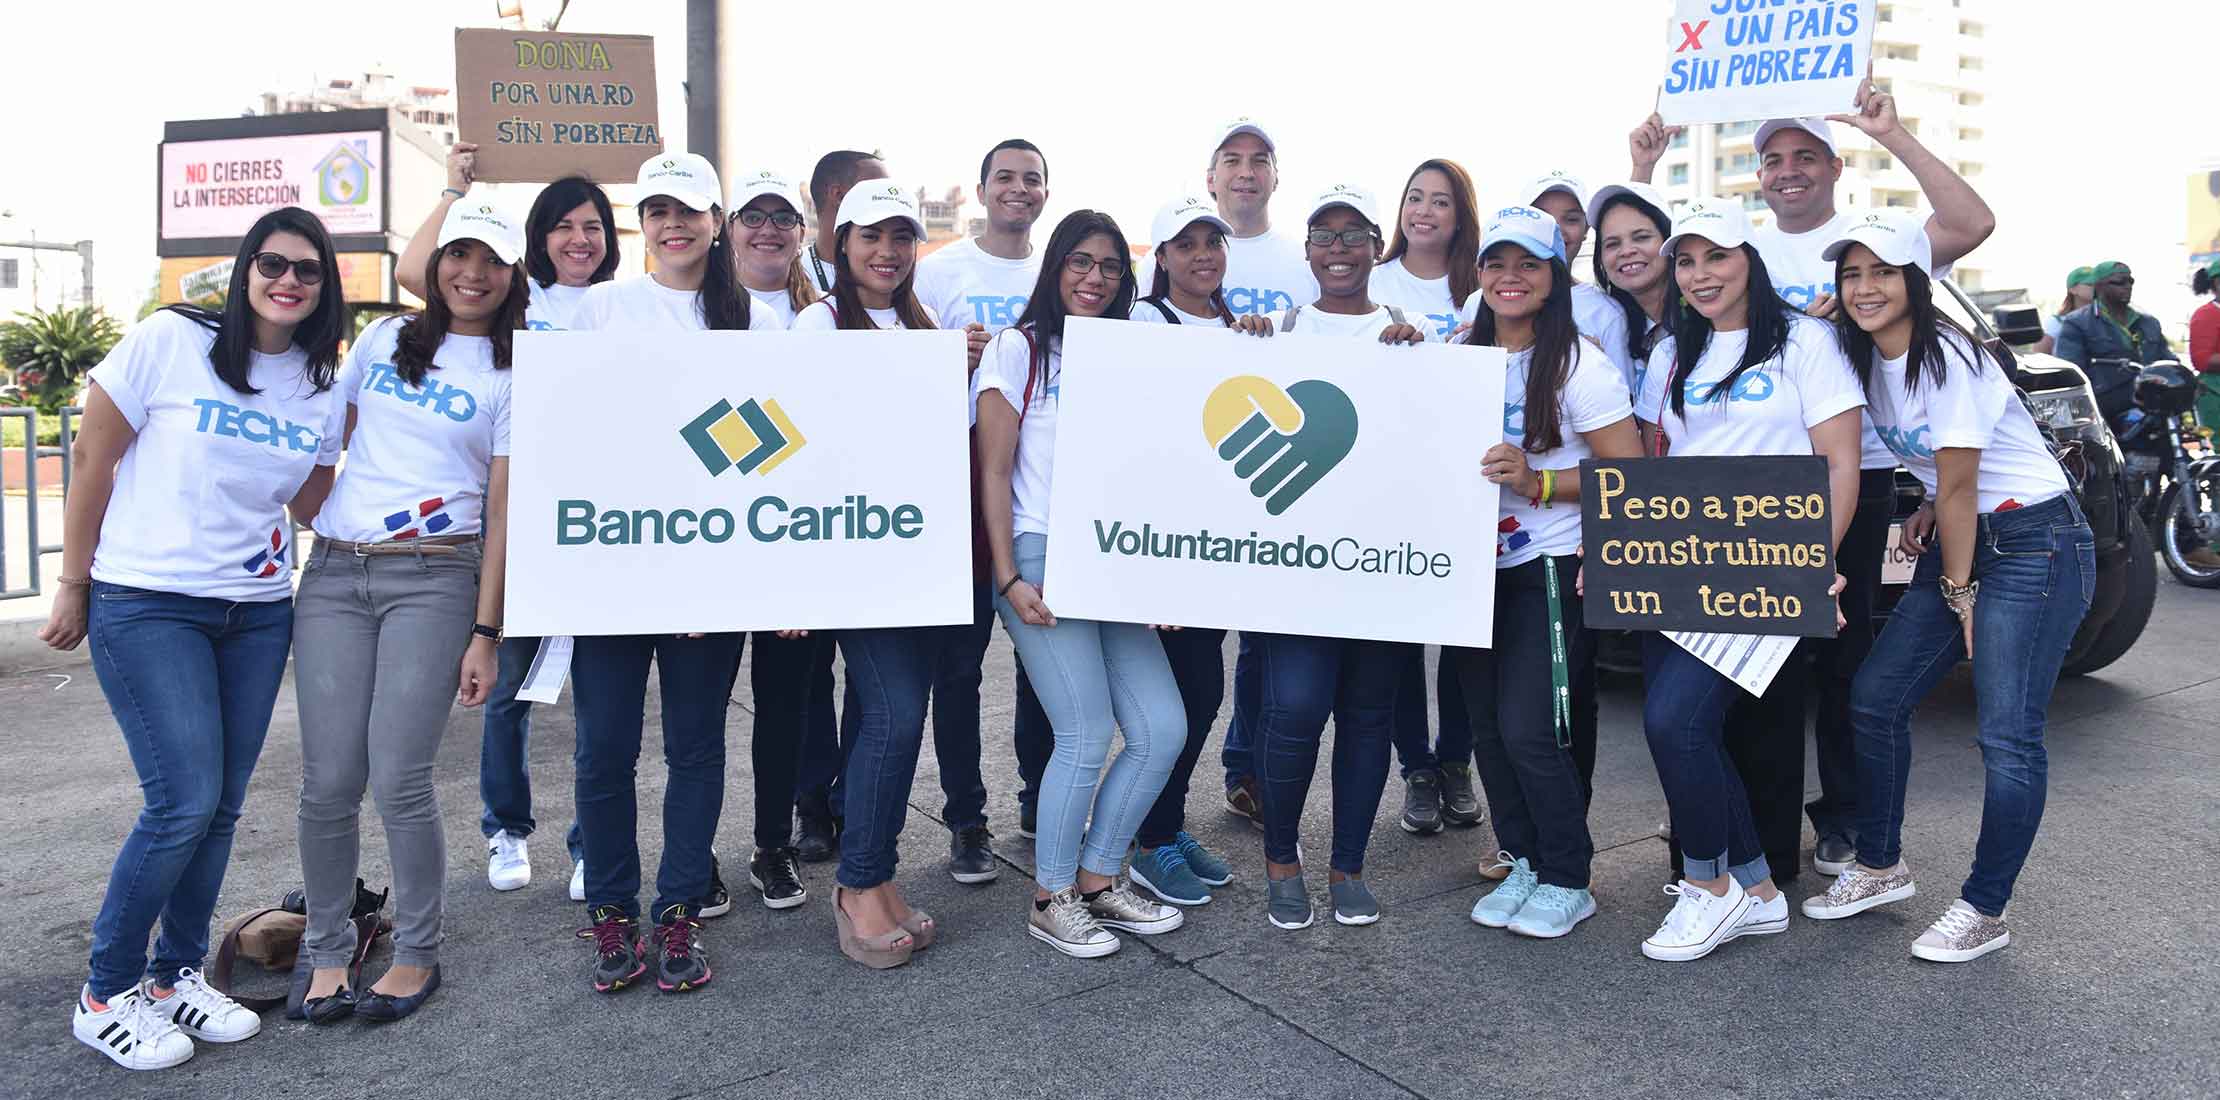 Imagen Voluntariado de Banco Caribe apoya colecta de Techo